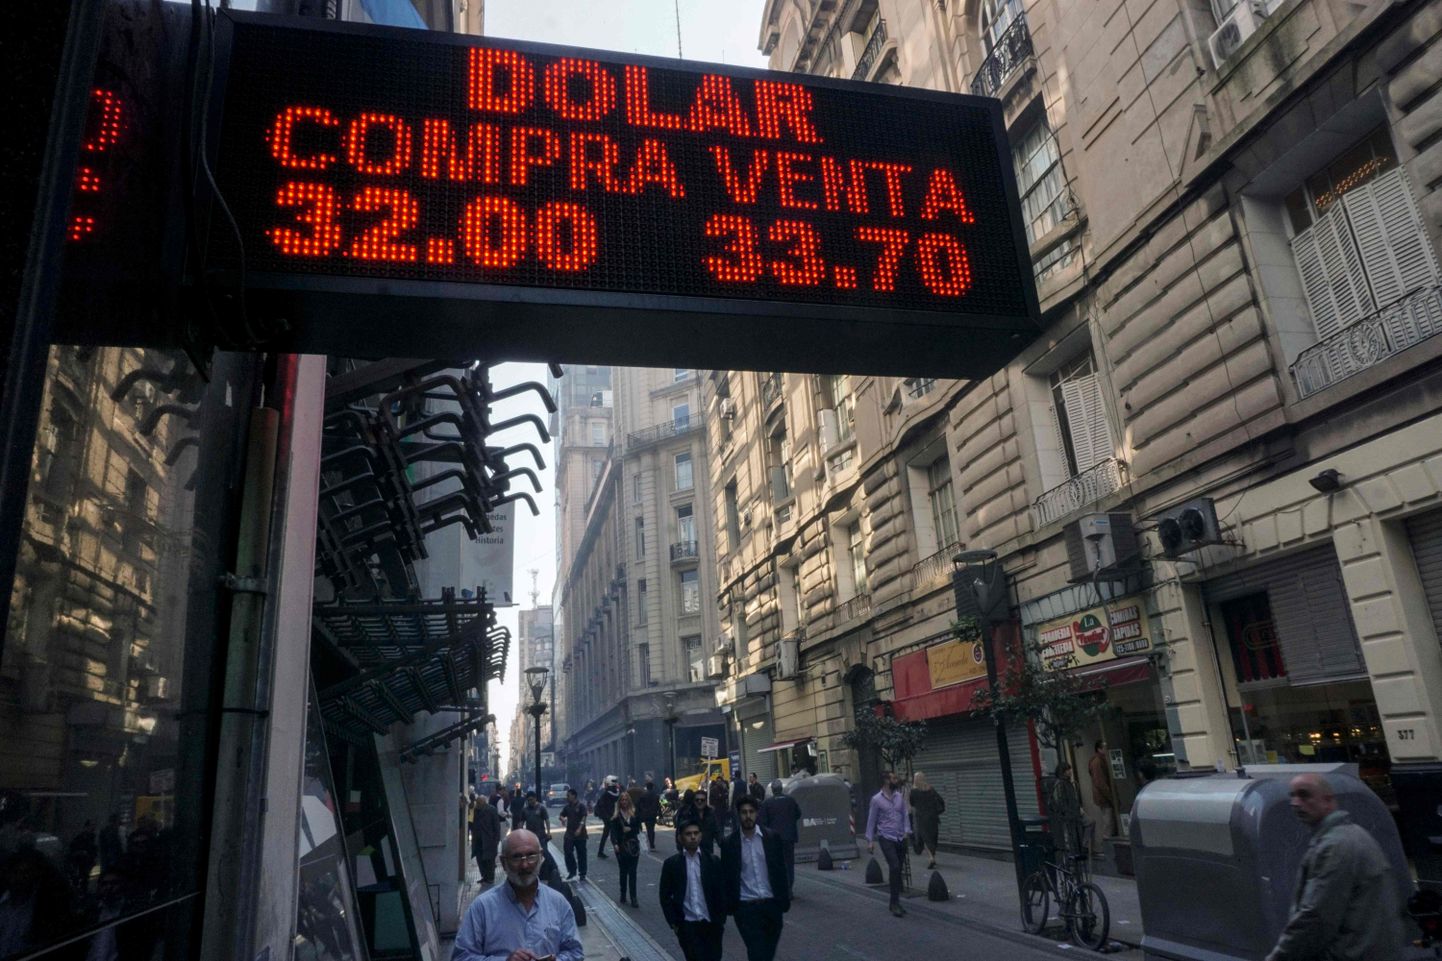 Valuutavahetus Buenos Aireses 29. augustil